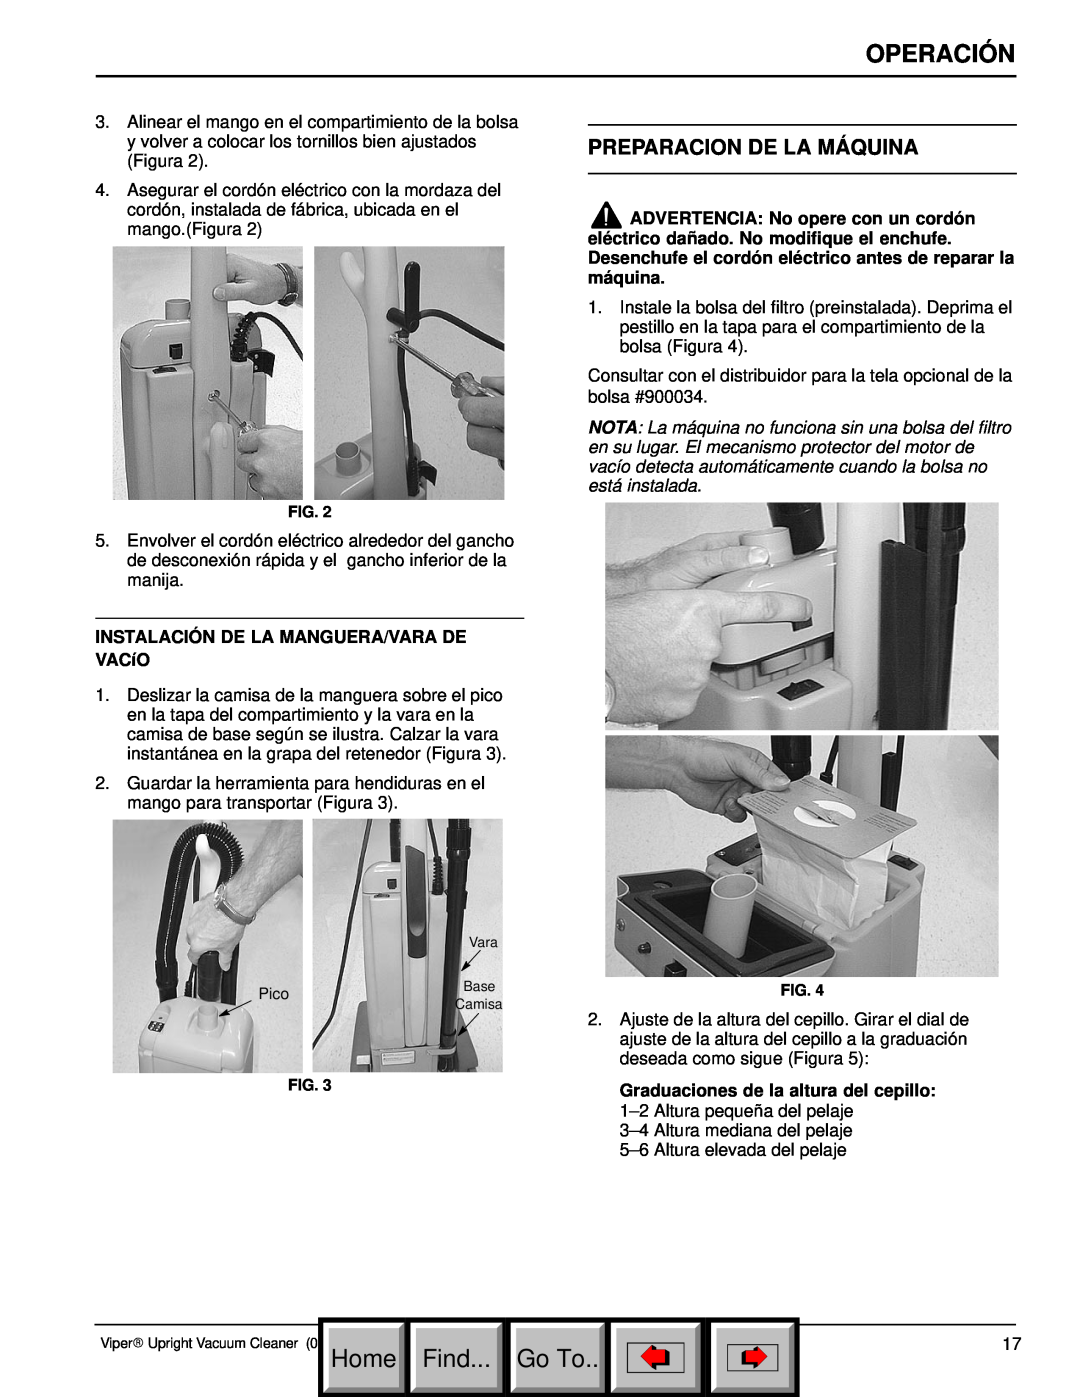 Philips 608669 manual Preparacion De La Máquina, Operación, Home, Find, Go To 